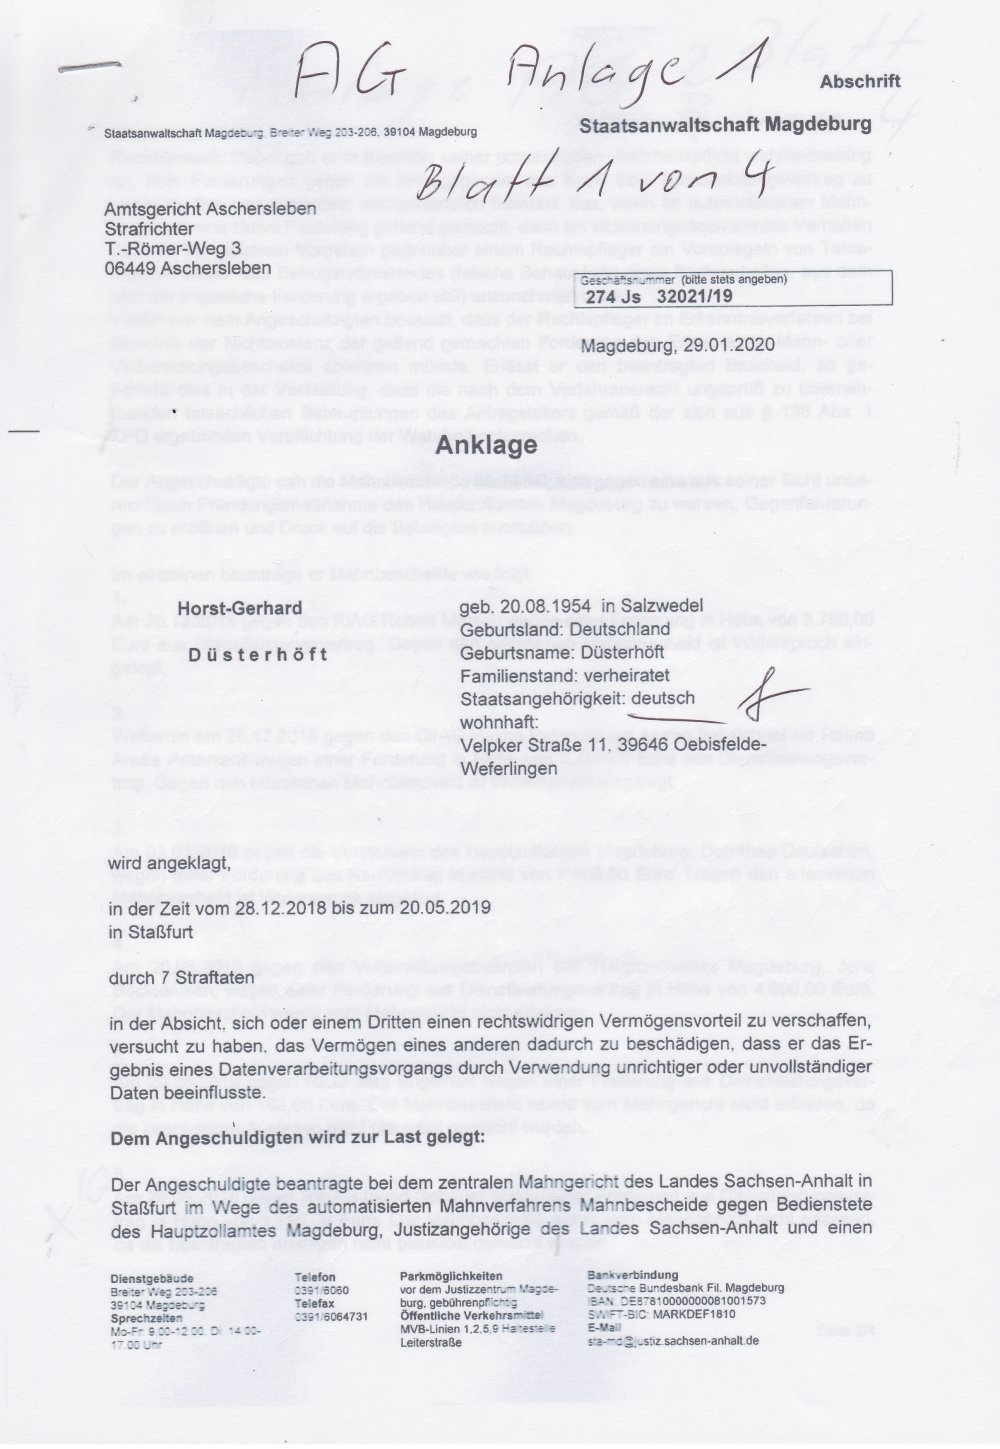 Anklage AG Aschersleben 1 4 mit 1000pix